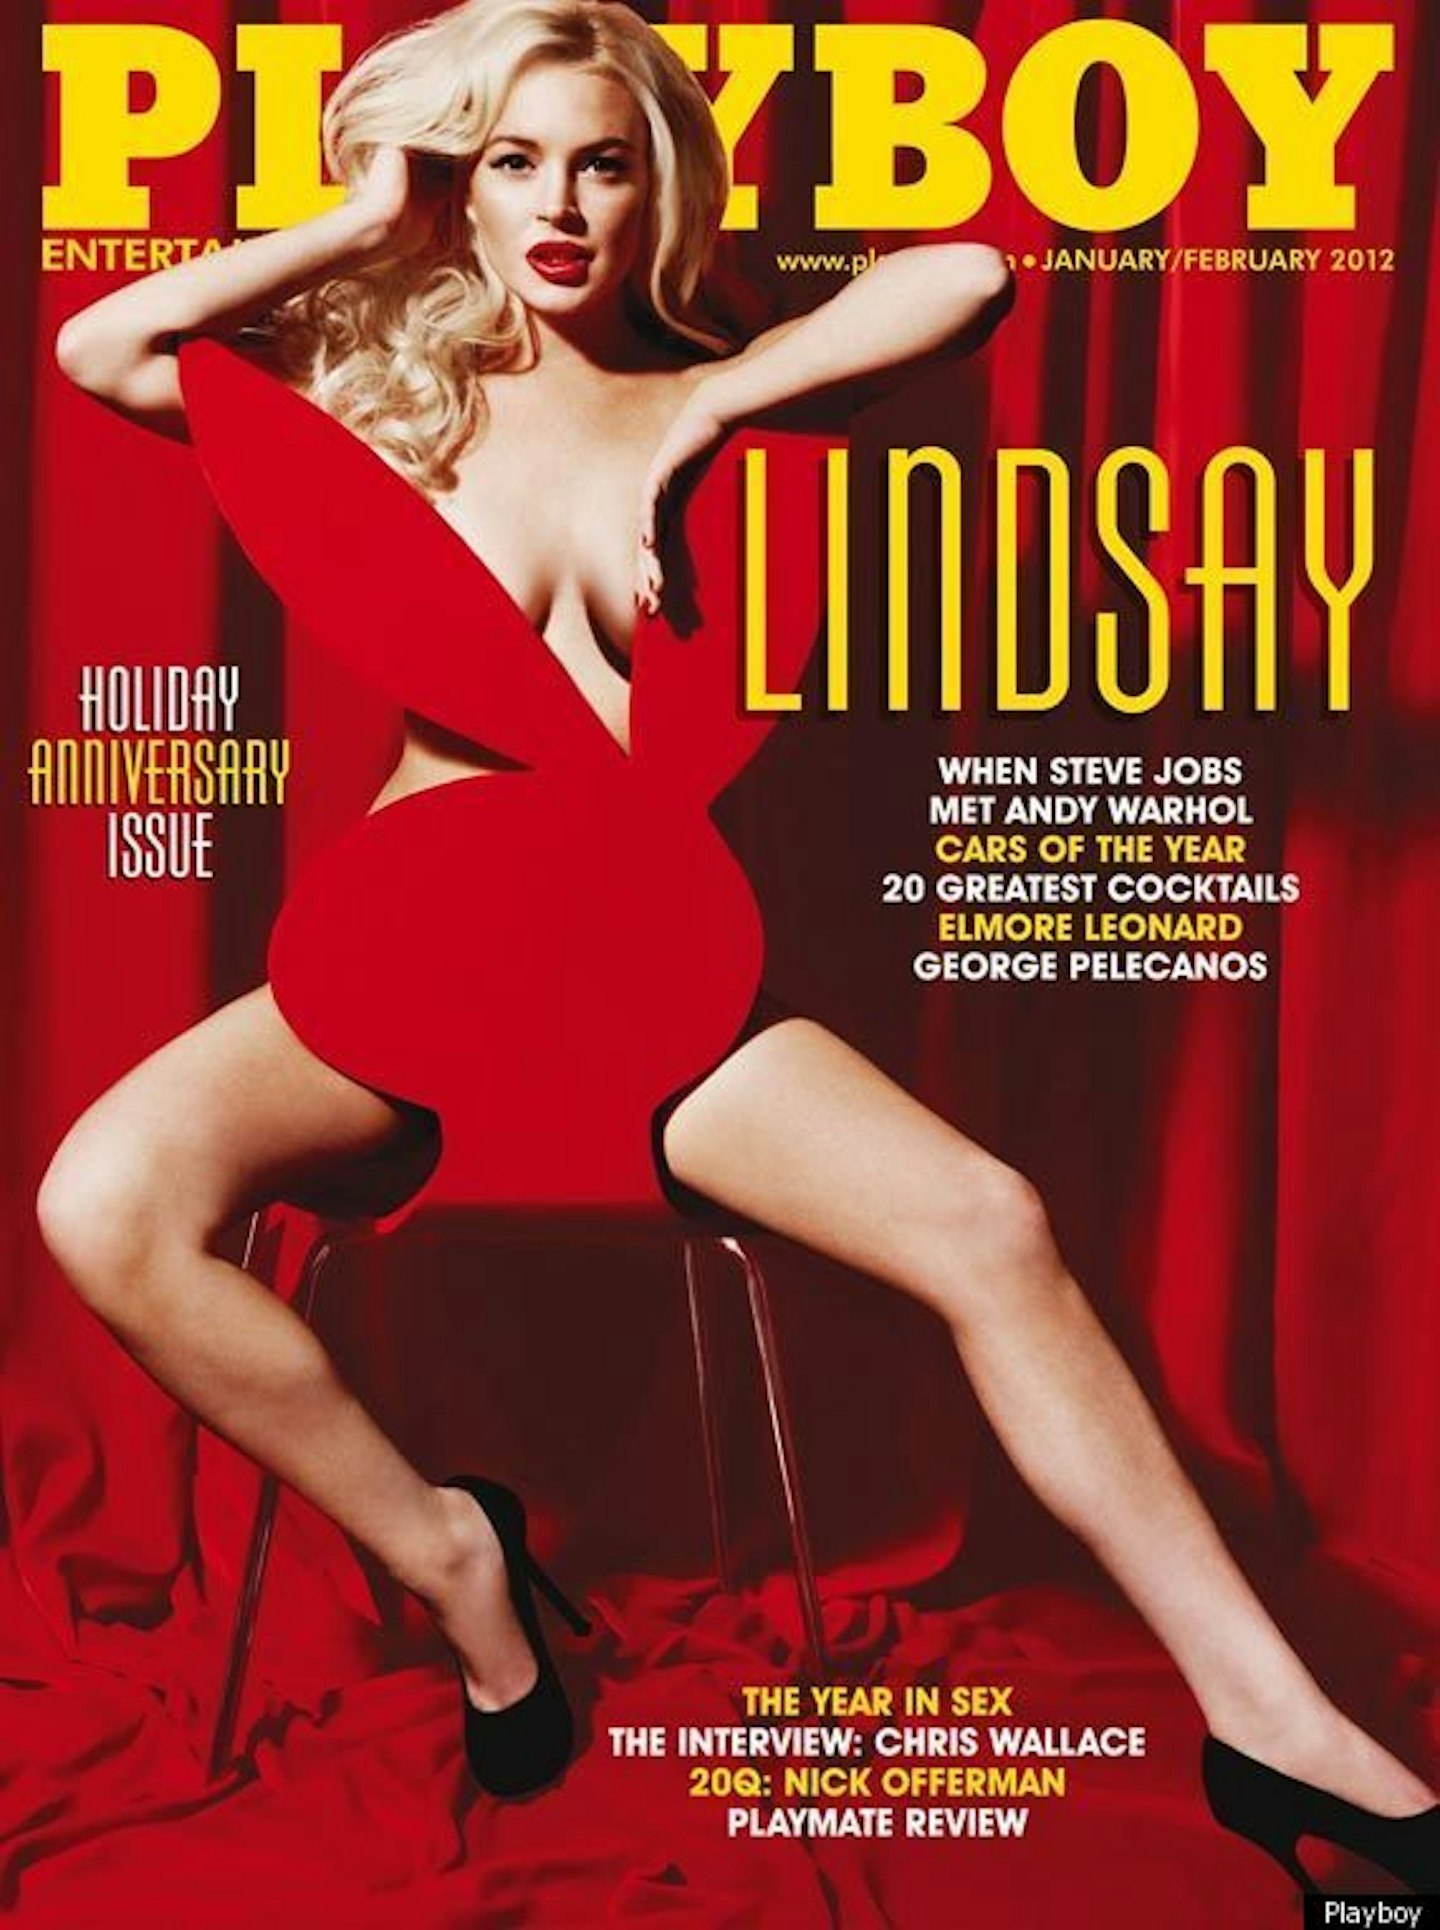 Lindsay Lohan's CV